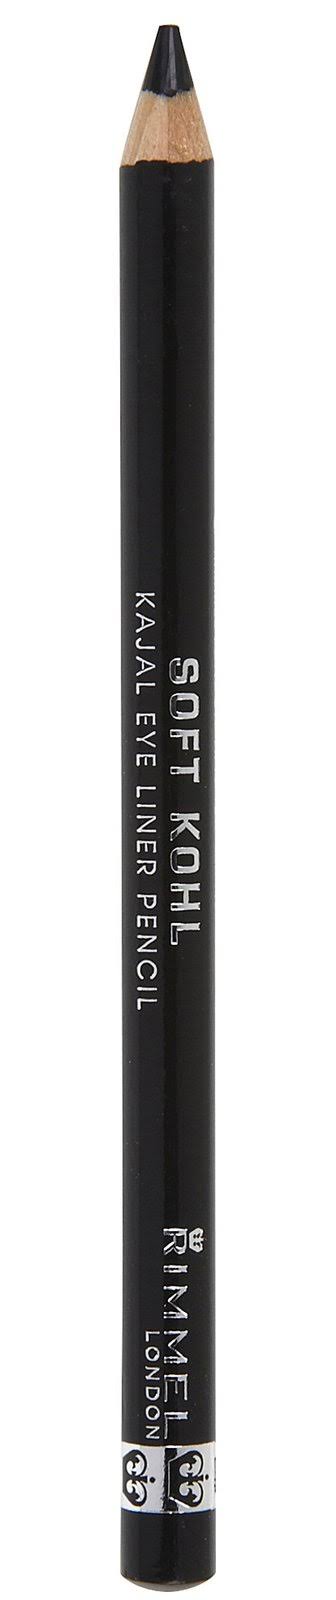 Rimmel London Soft Kohl Kajal Eye Liner Pencil - 061 Jet Black, 1.2g